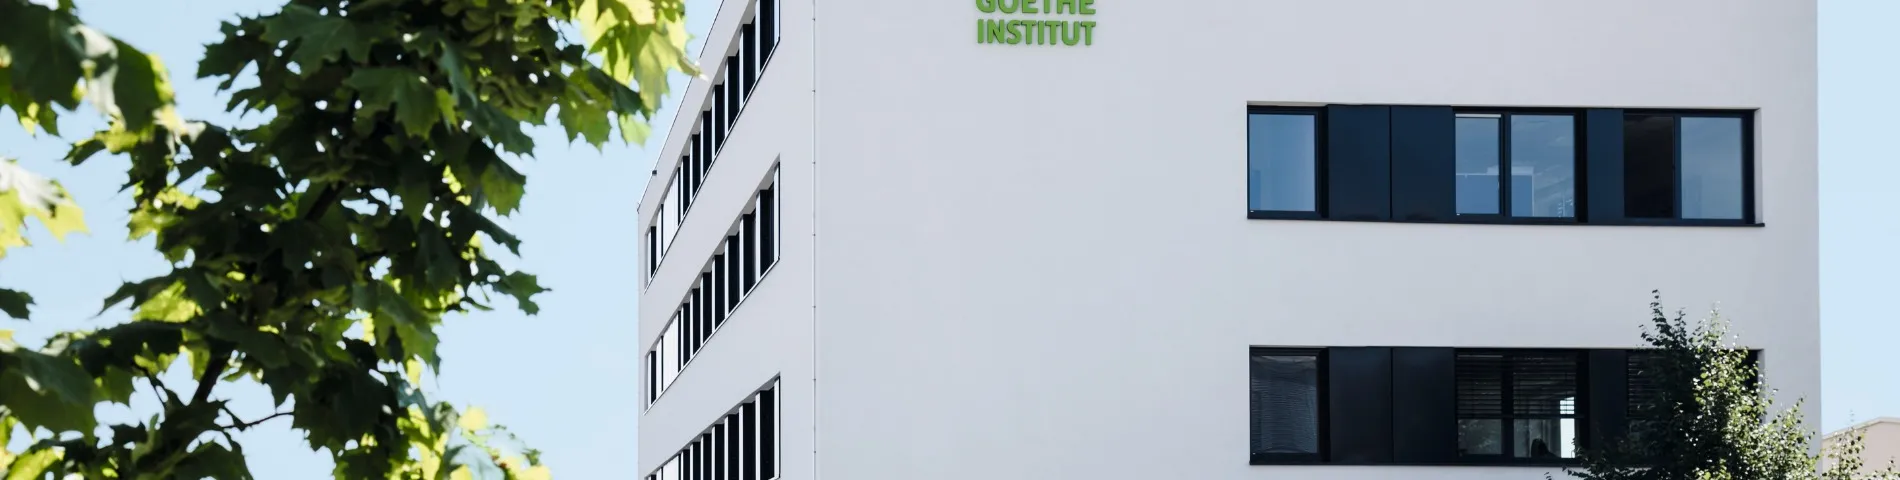 Goethe-Institut 사진 1